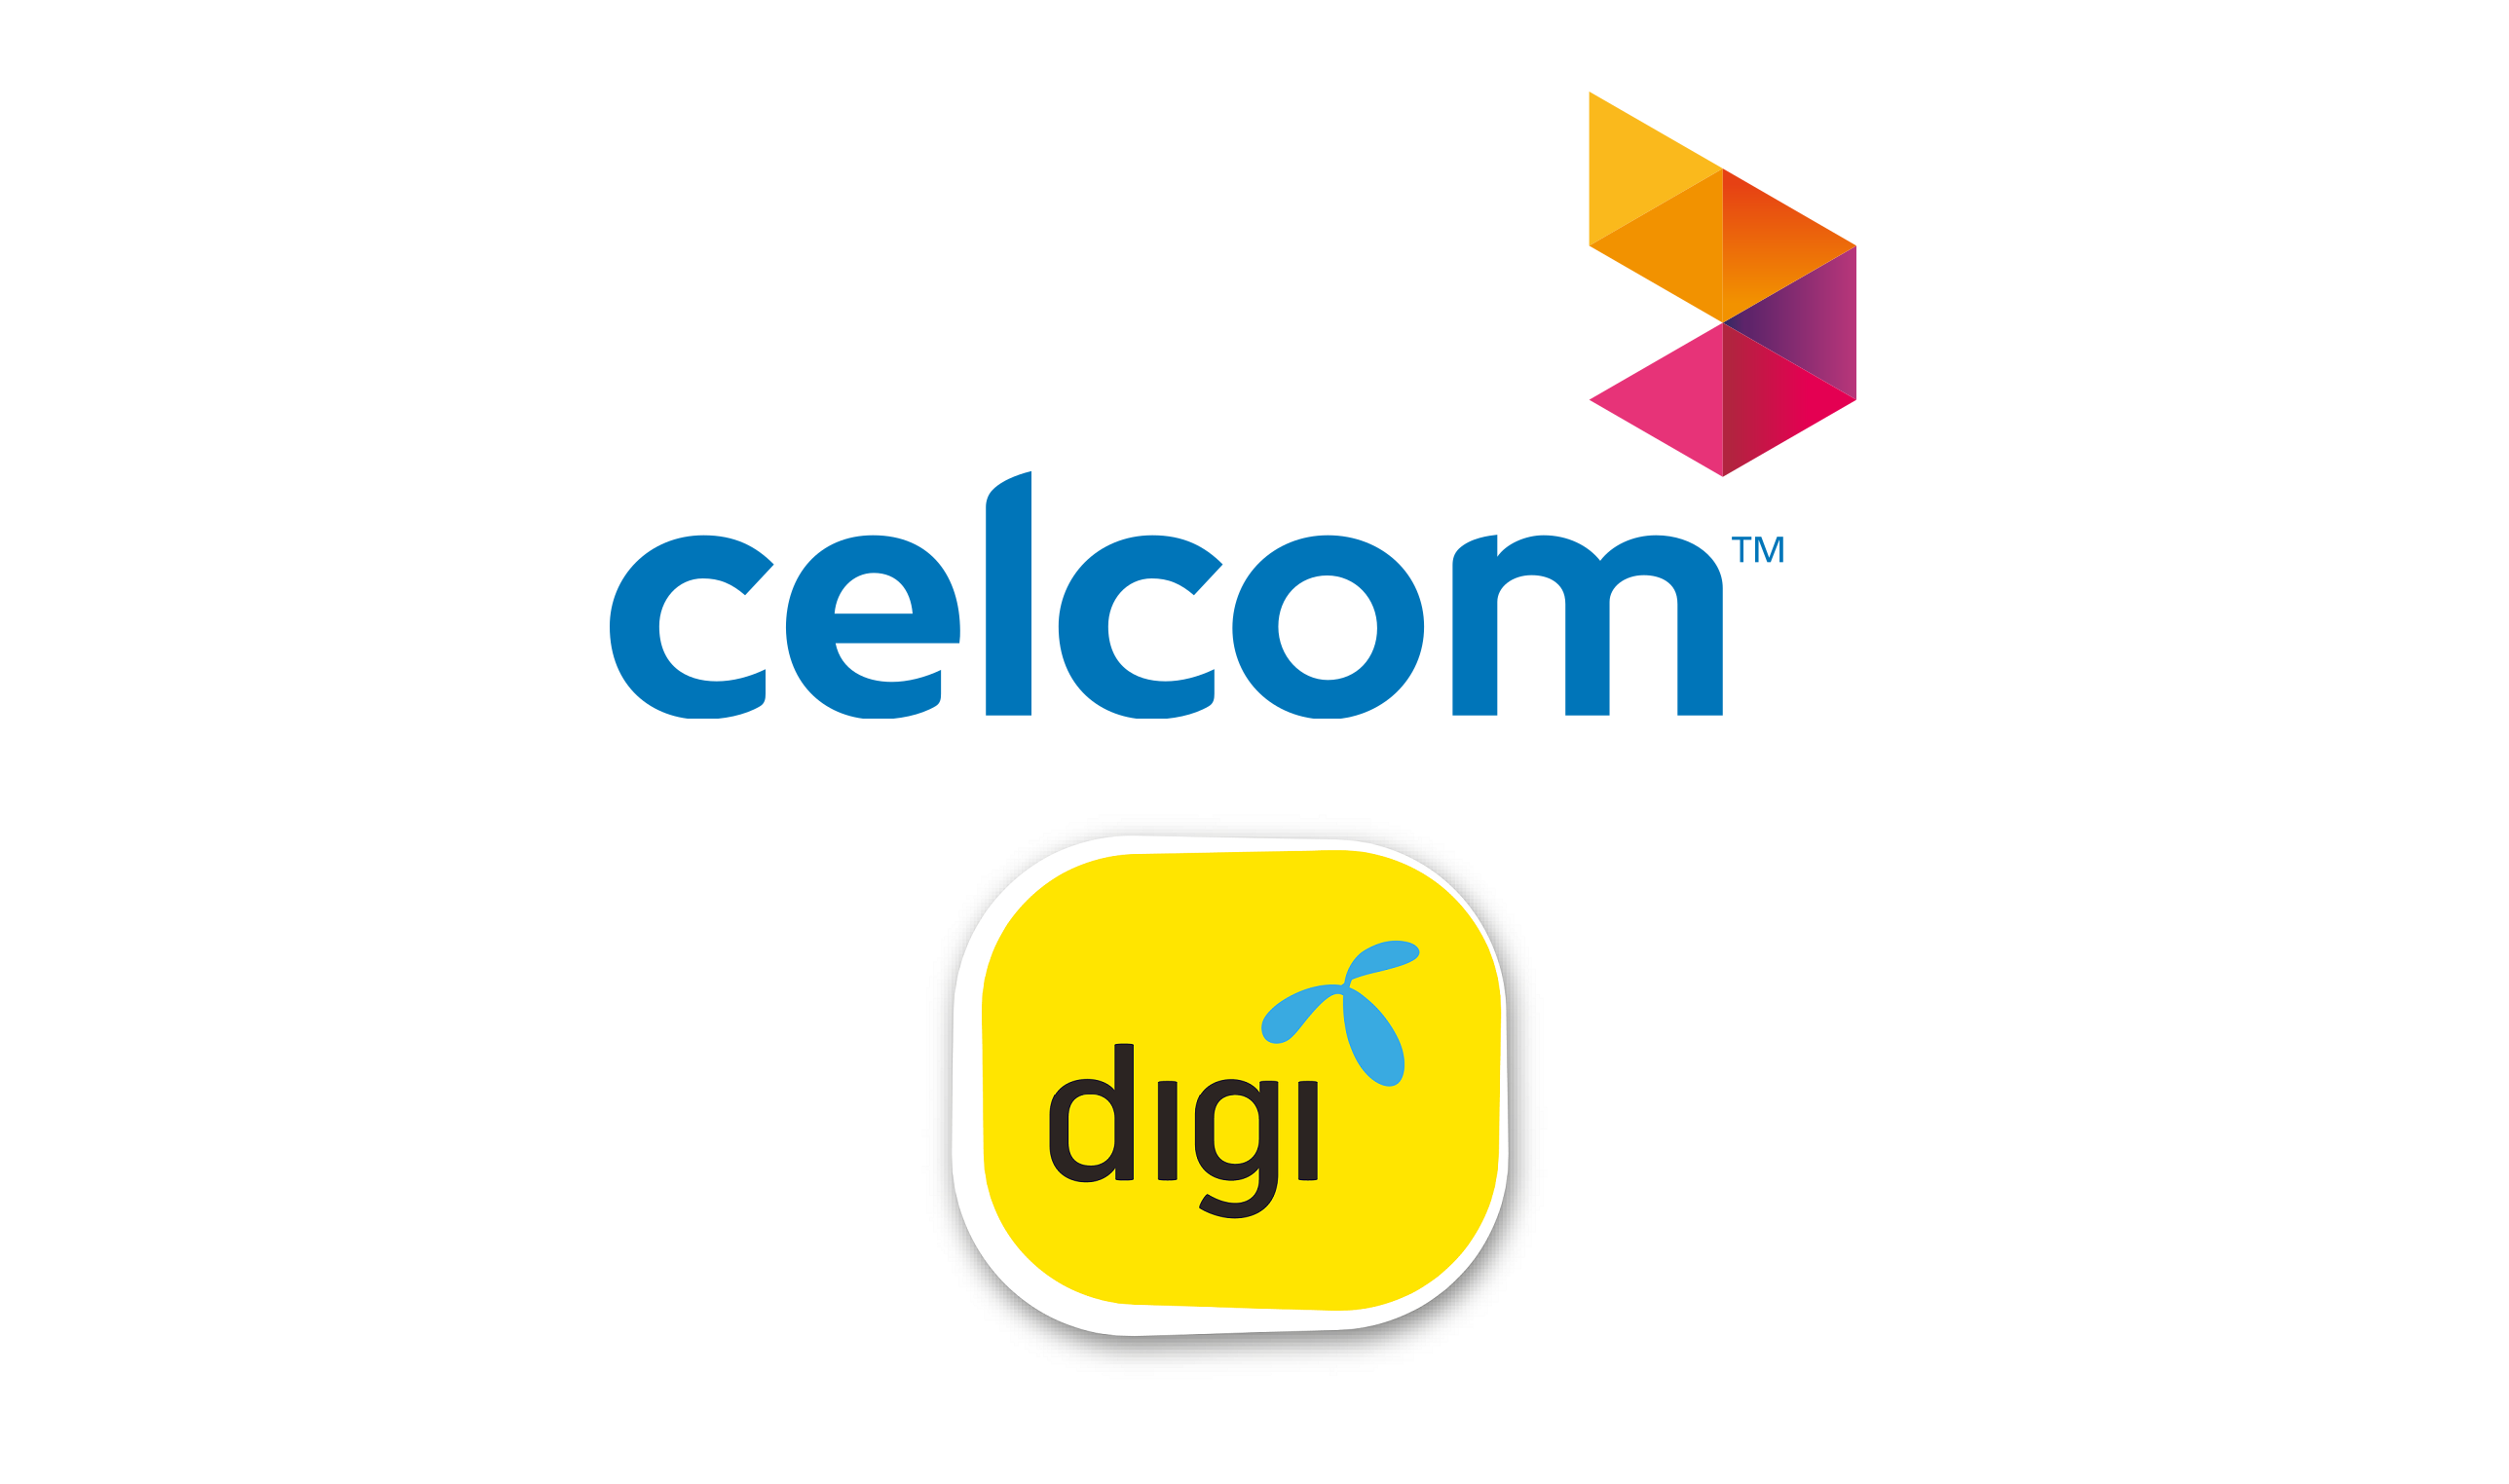 Celcom digi merger